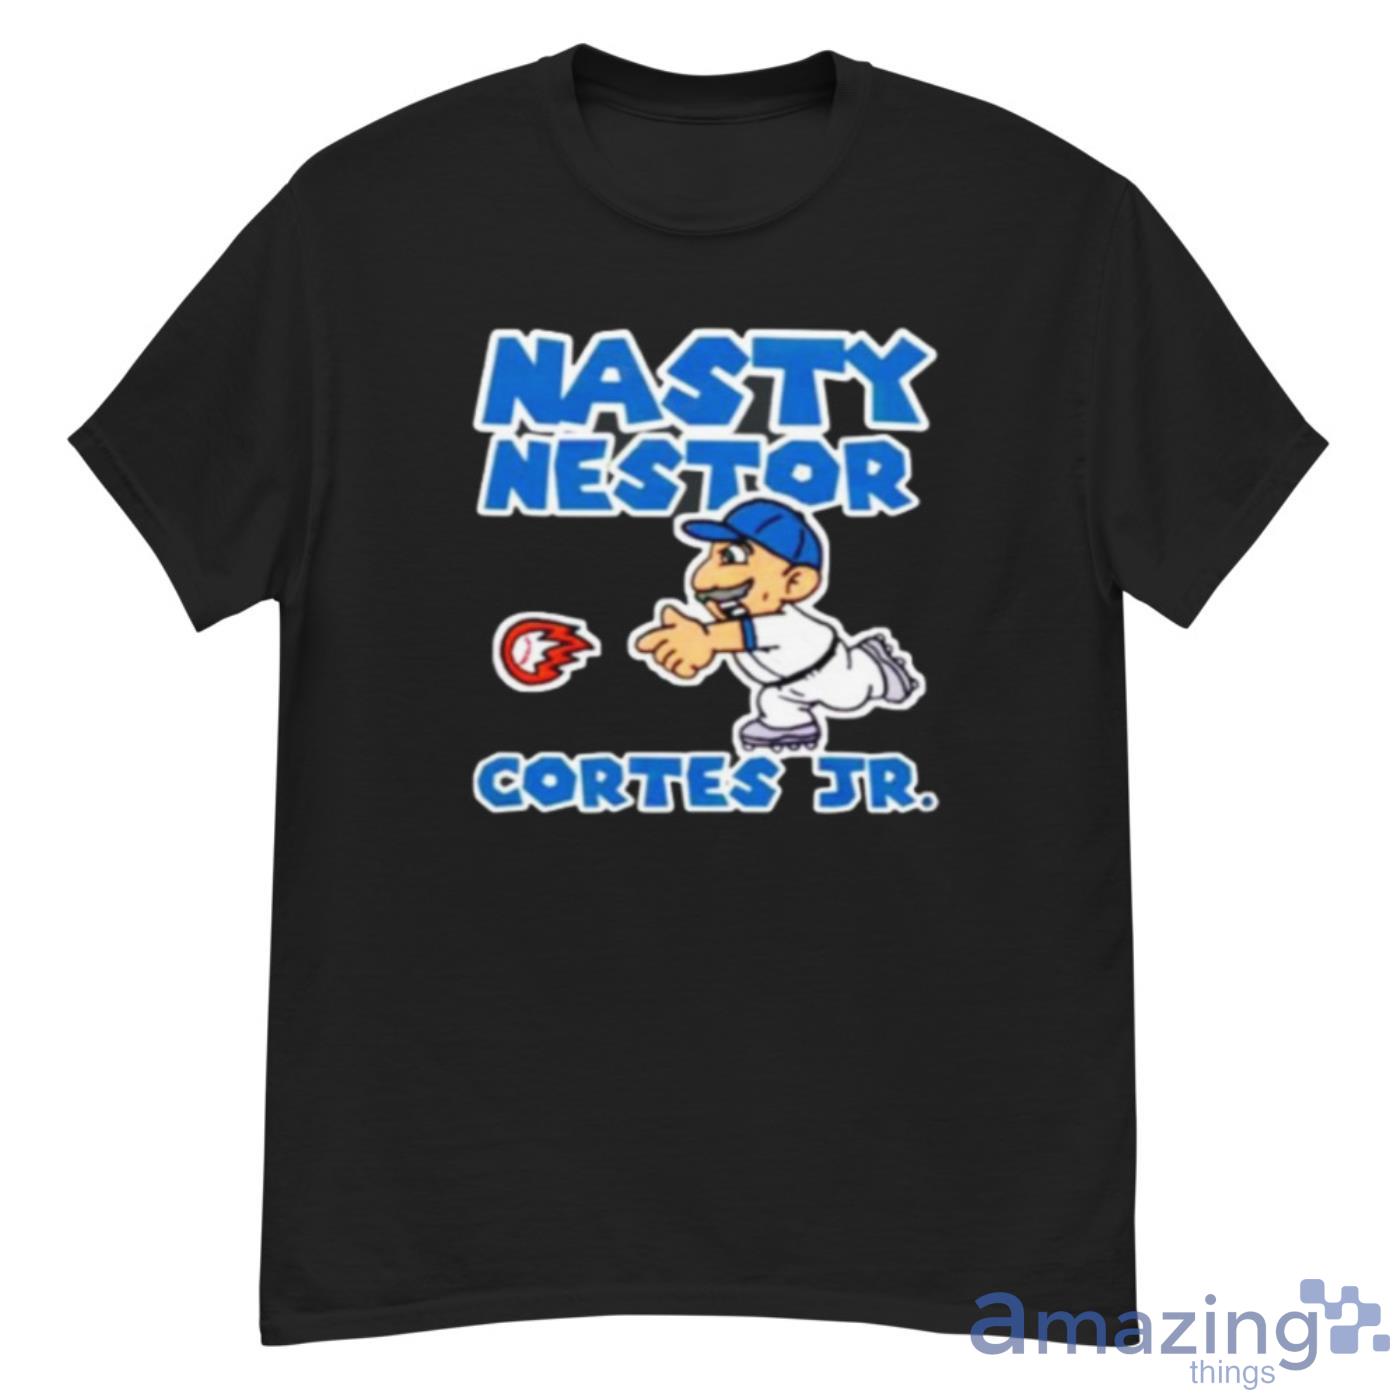 nasty nestor shirt day